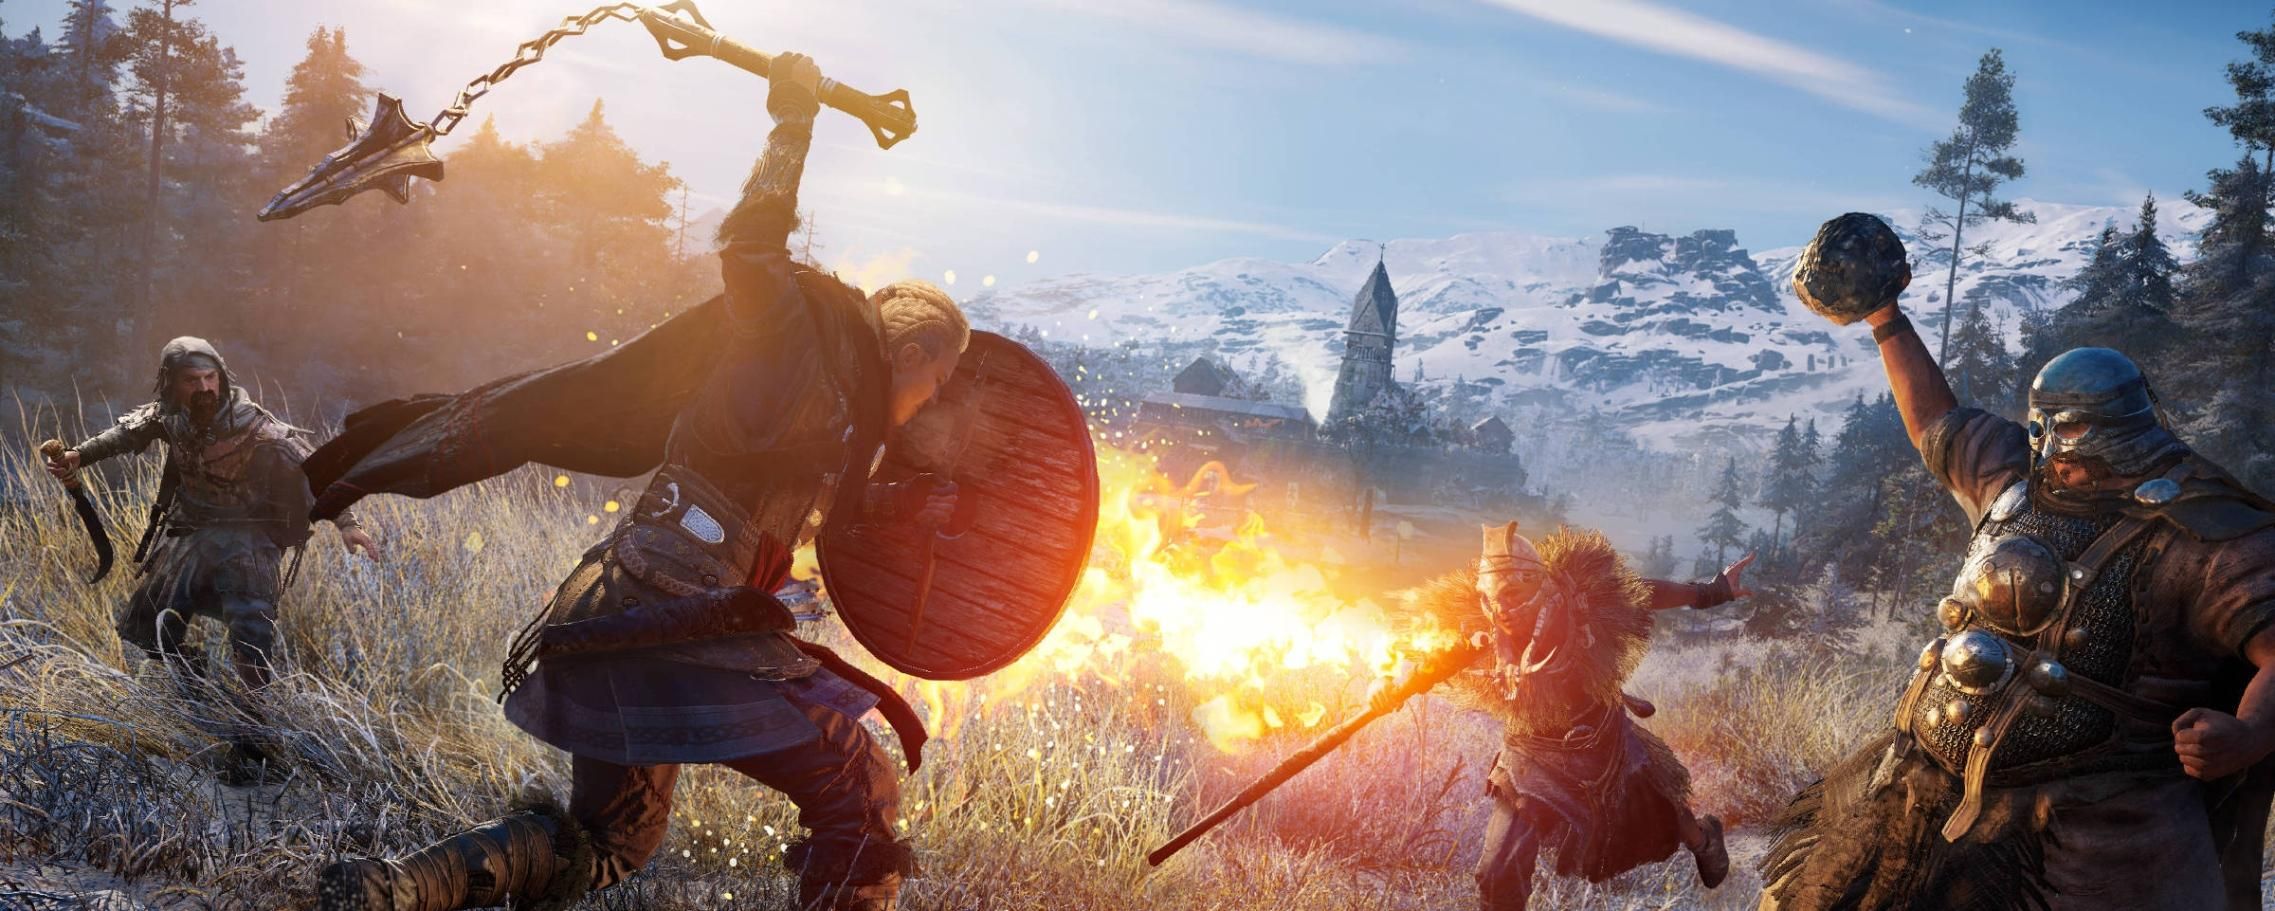 Sony anuncia Mortal Kombat X e outros jogos gratuitos na PS Plus -  Tecnologia e Games - Folha PE